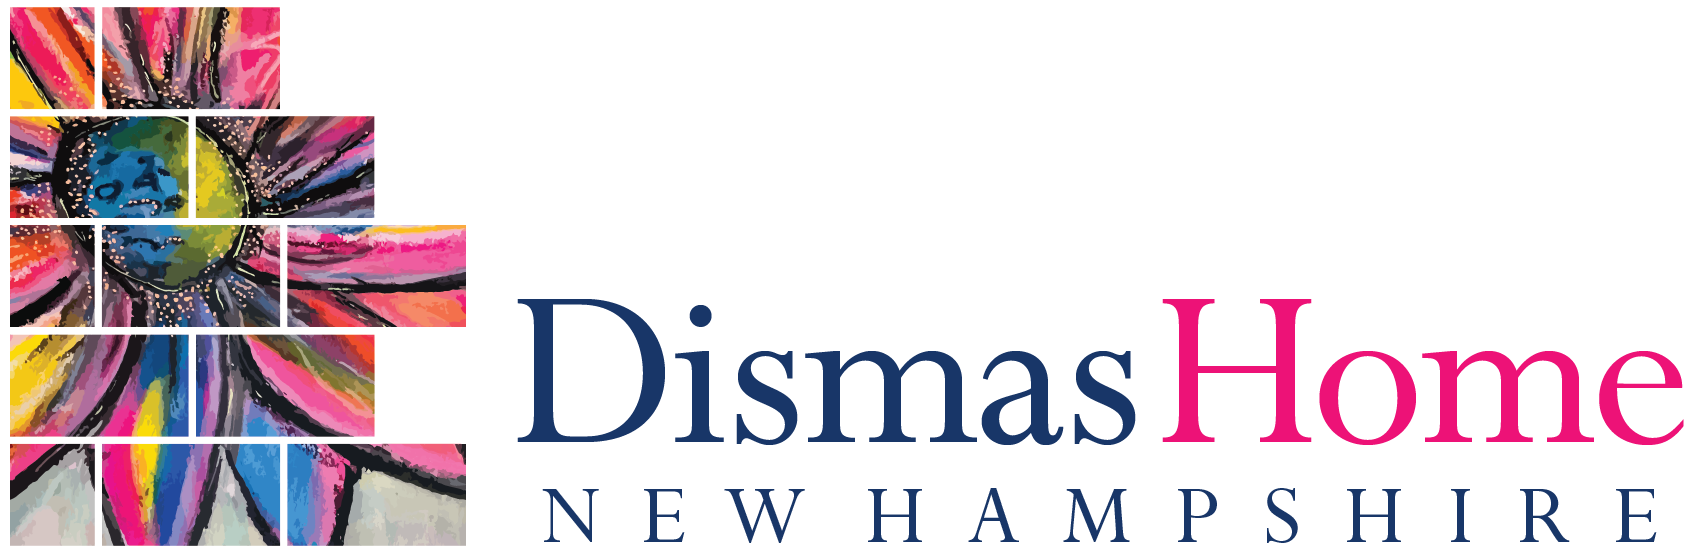 Dismas Home of New Hampshire logo